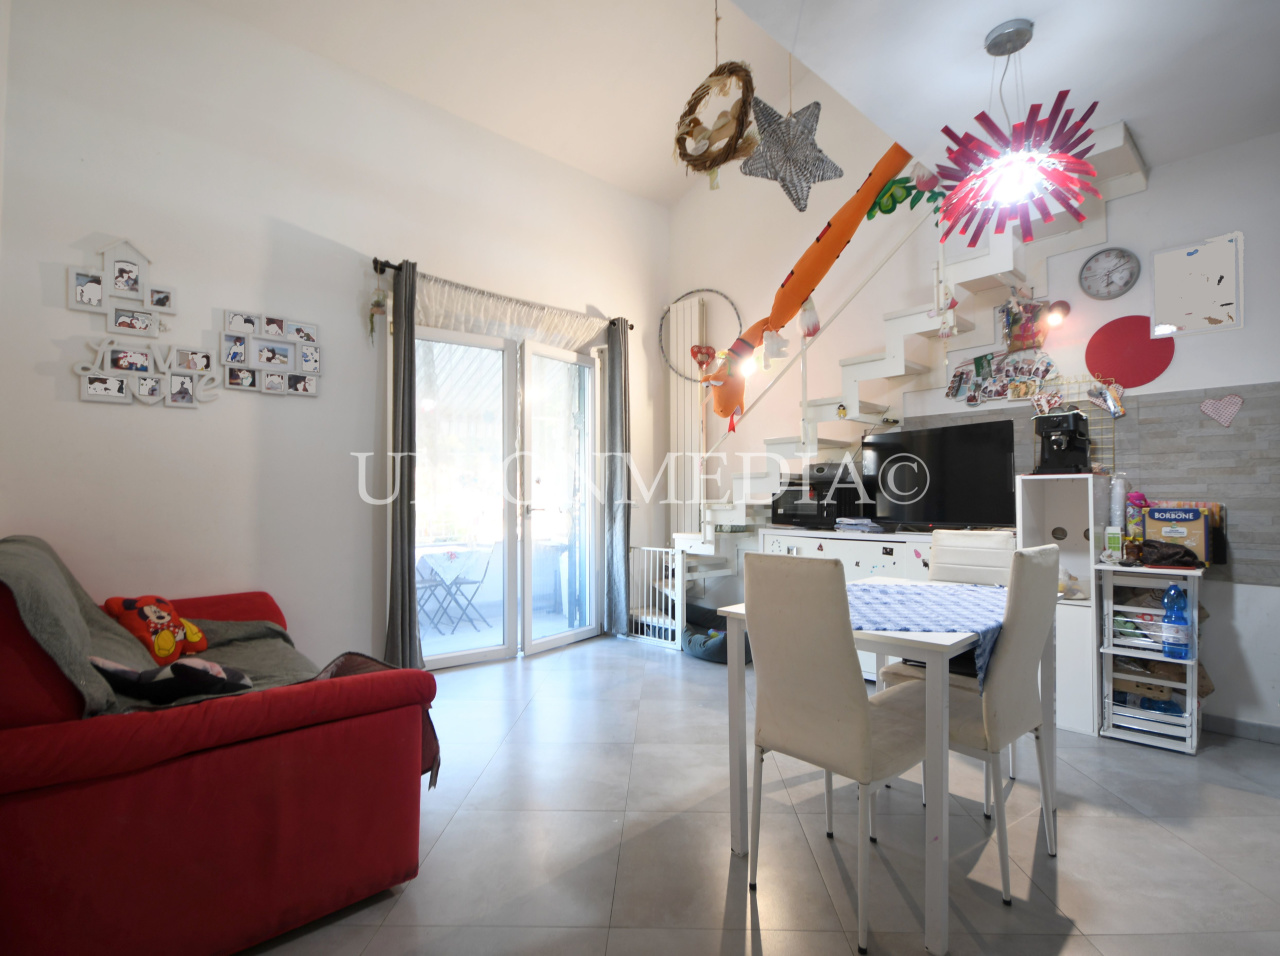 Appartamento in vendita a Arcola, 3 locali, prezzo € 140.000 | PortaleAgenzieImmobiliari.it